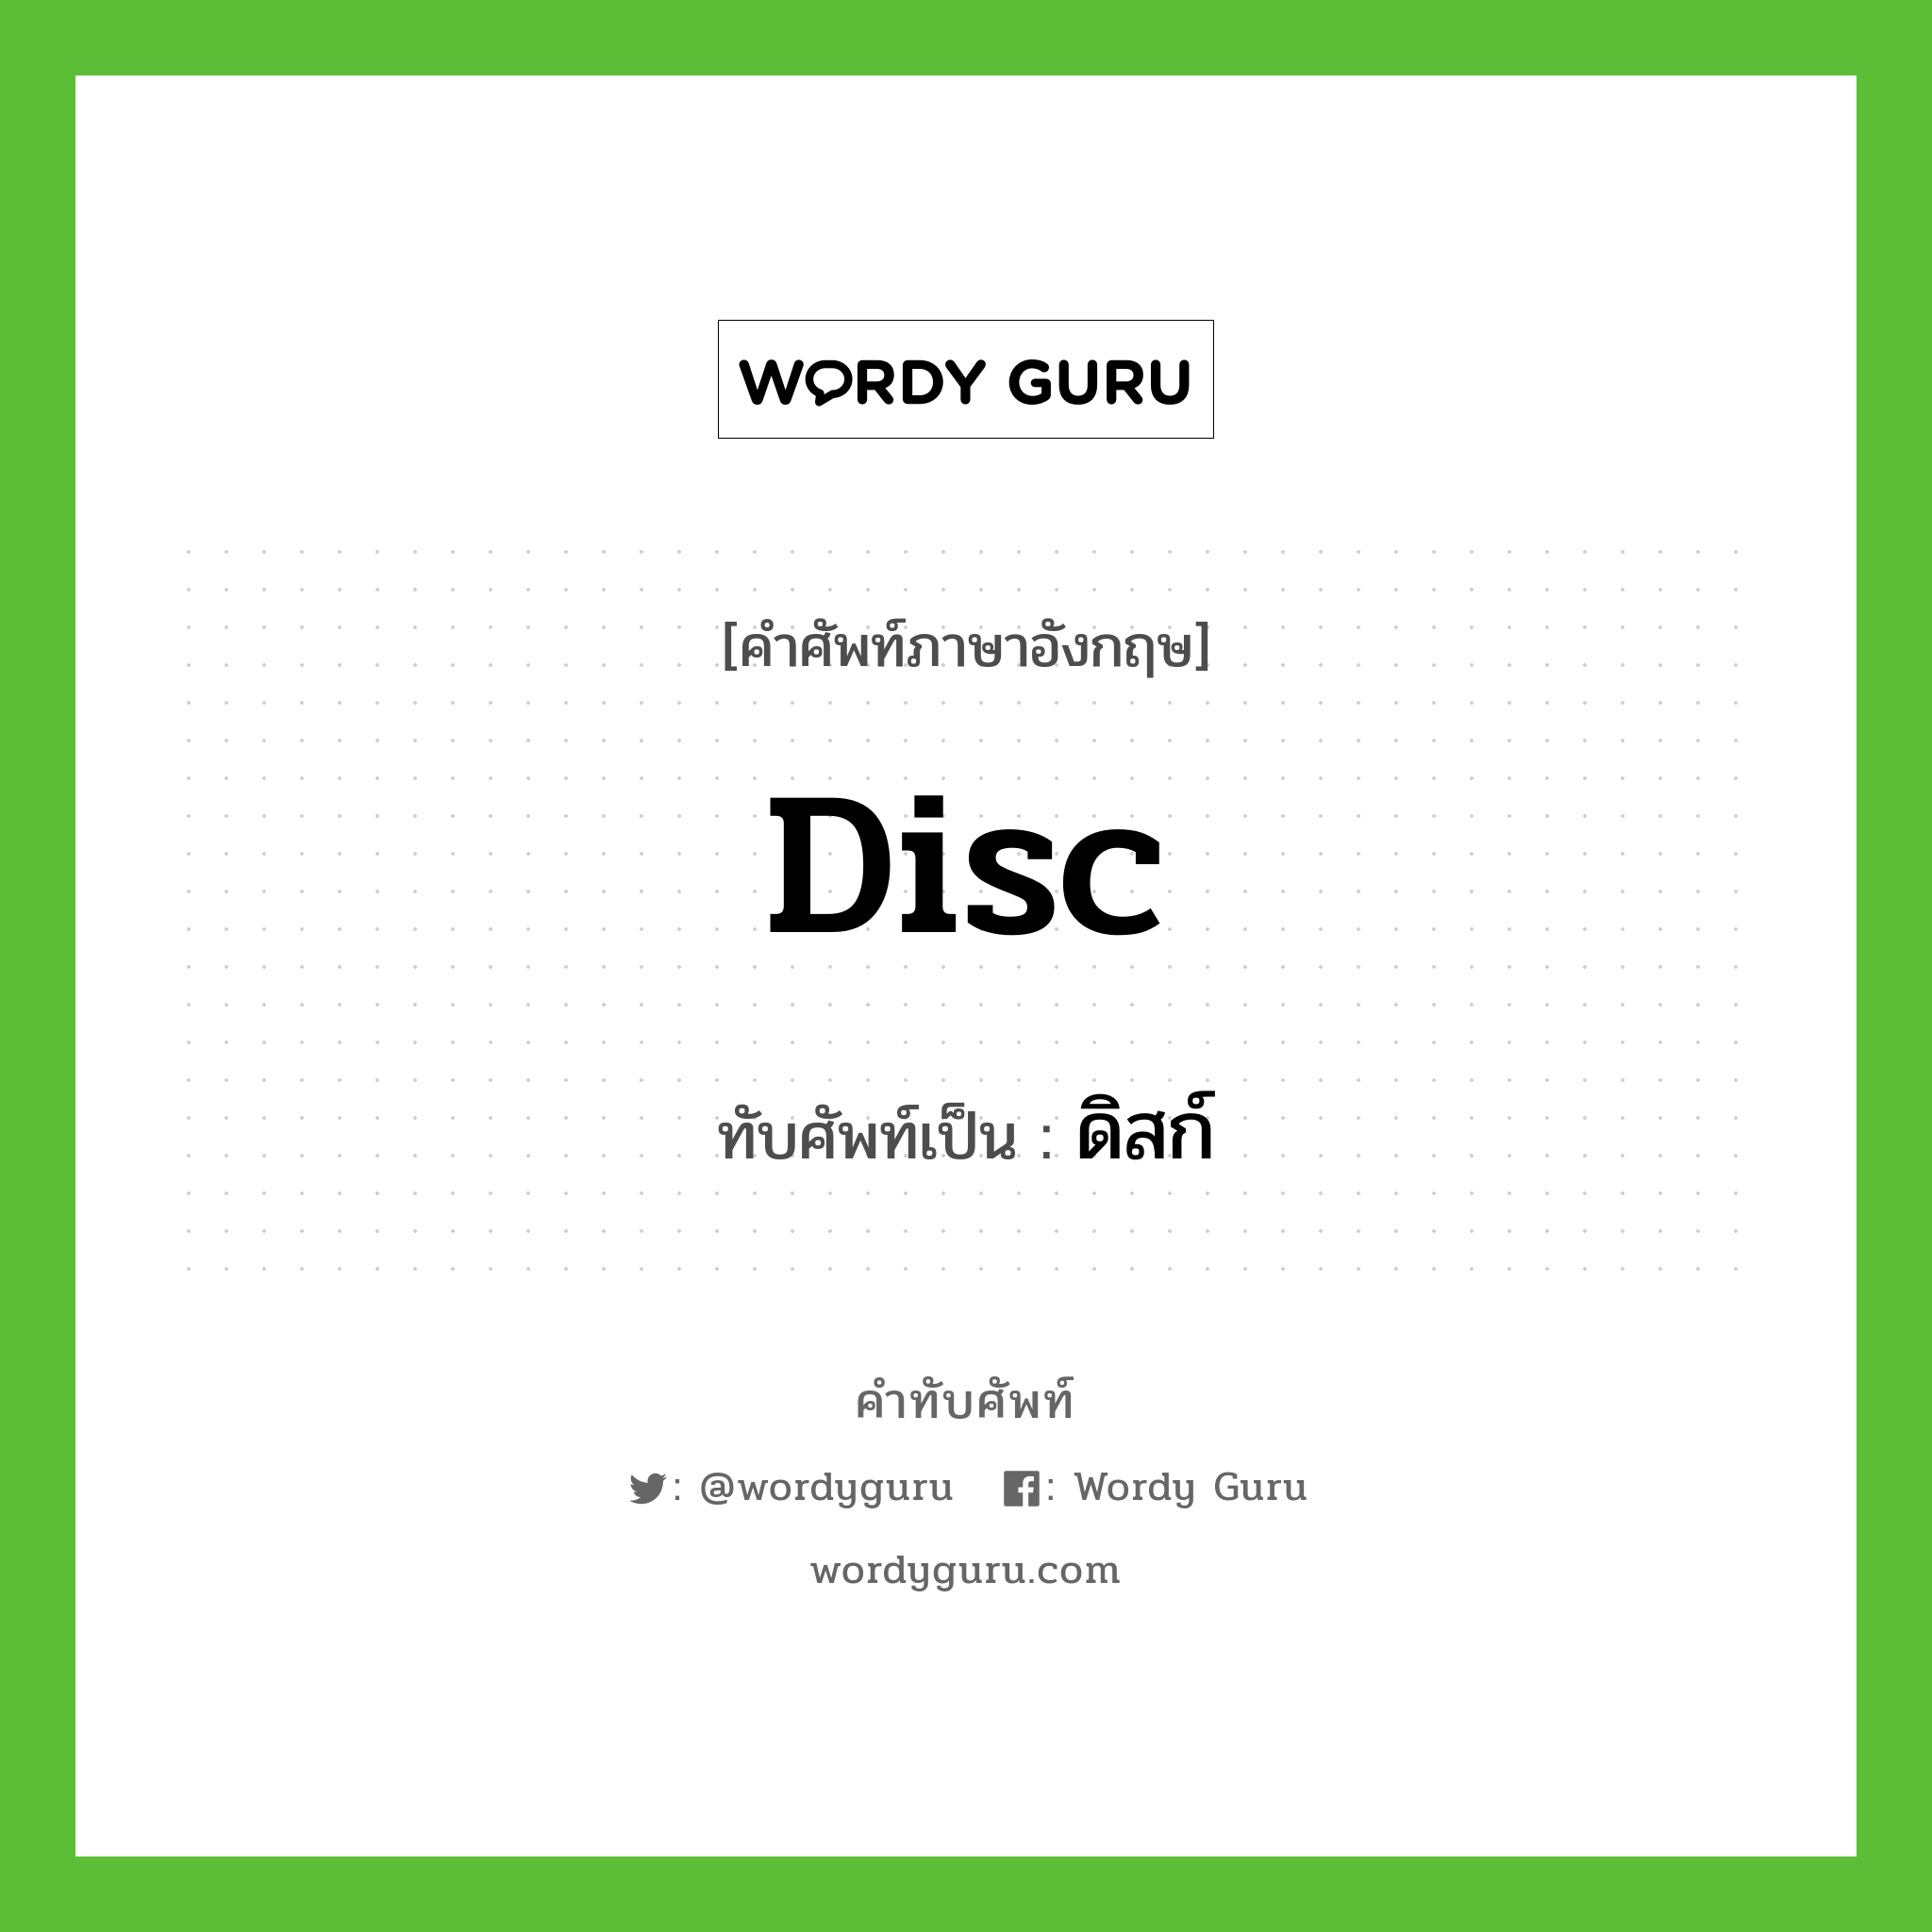 disc เขียนเป็นคำไทยว่าอะไร?, คำศัพท์ภาษาอังกฤษ disc ทับศัพท์เป็น ดิสก์